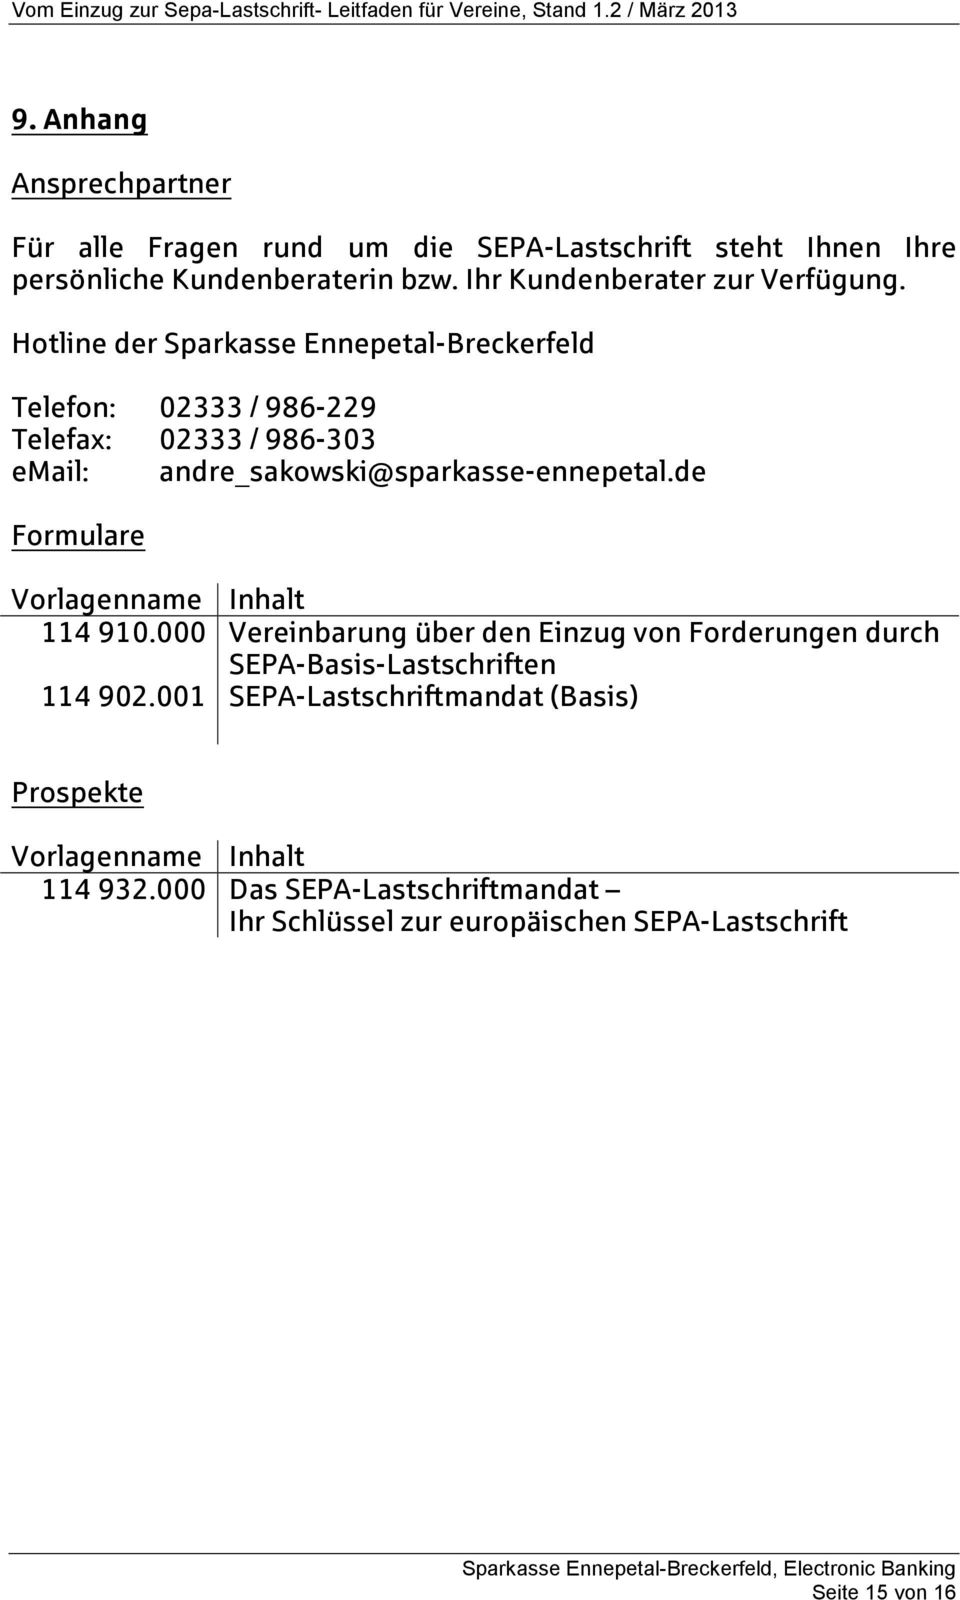 Hotline der Sparkasse Ennepetal-Breckerfeld Telefon: 02333 / 986-229 Telefax: 02333 / 986-303 email: andre_sakowski@sparkasse-ennepetal.